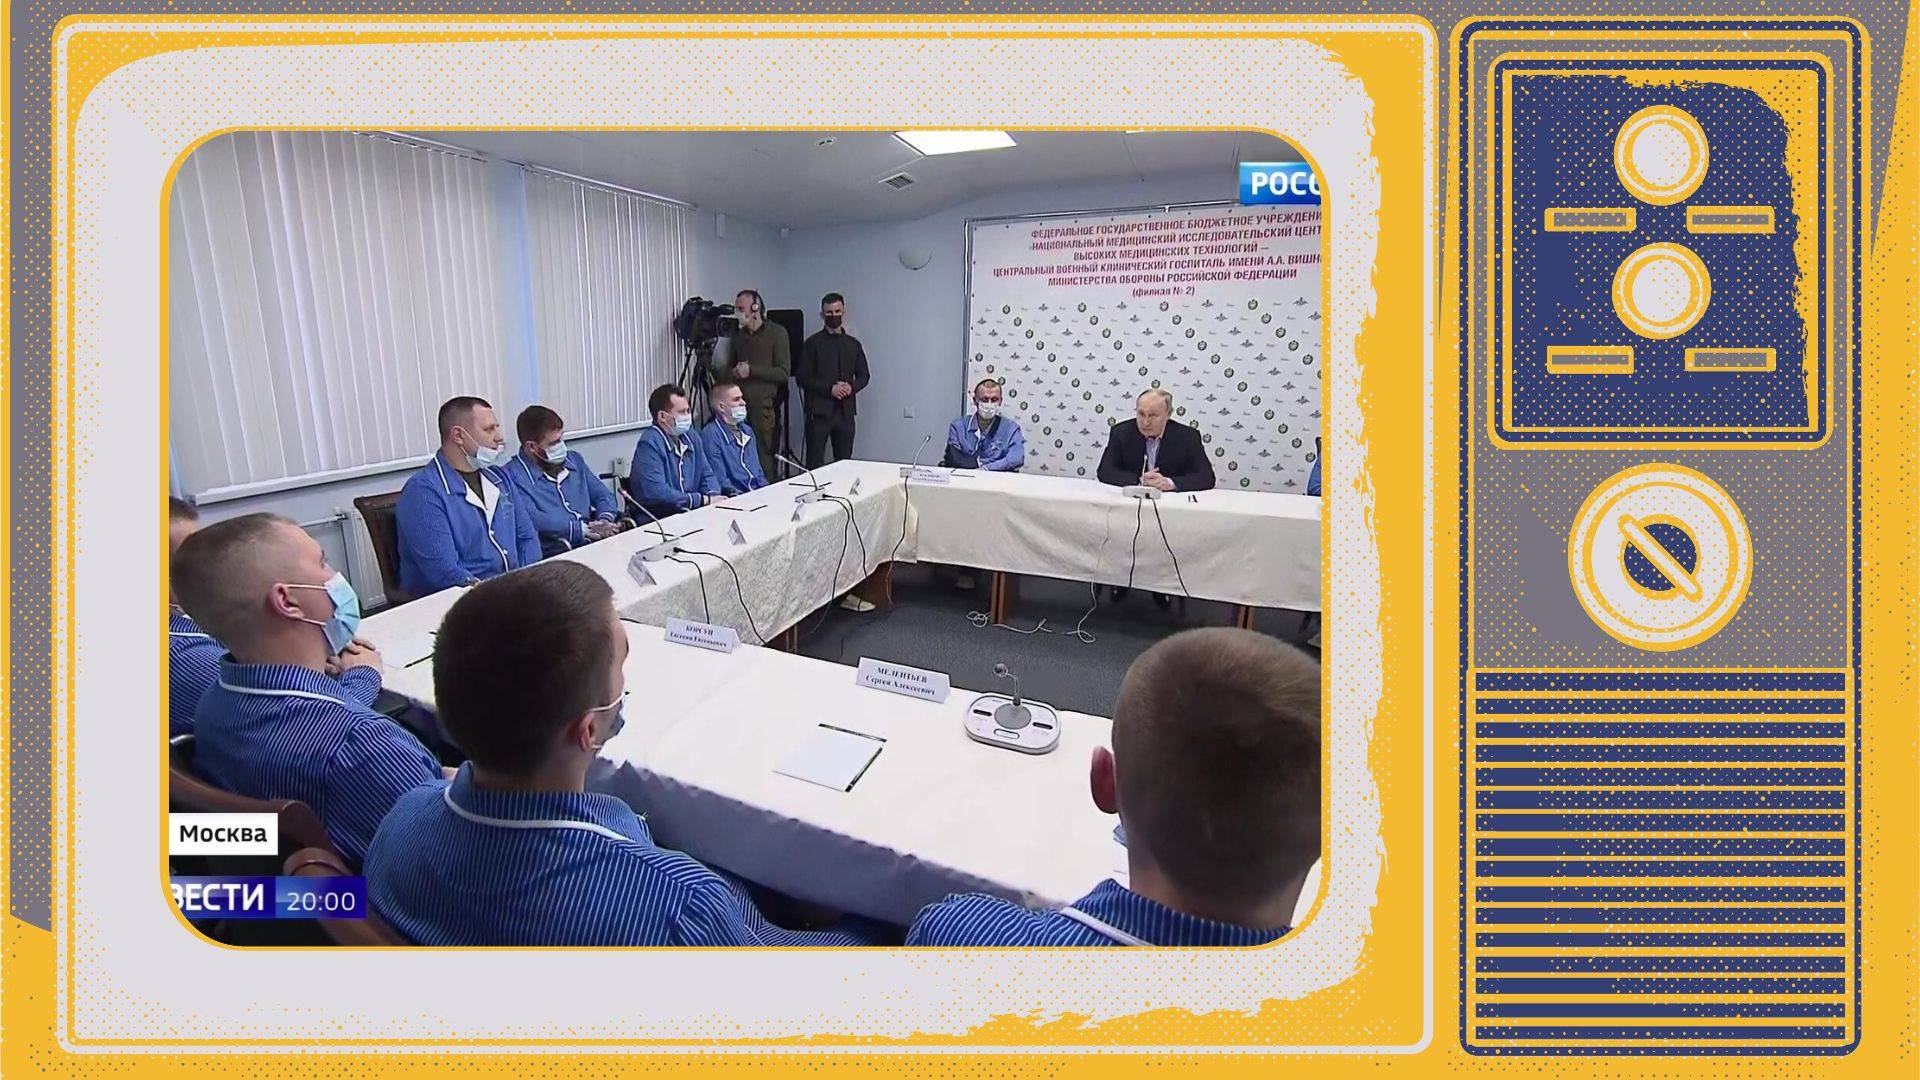 Grafika: w ramce starego telewizora zdjęcie Putina siedzącego przy stole z rannymi żołnierzami